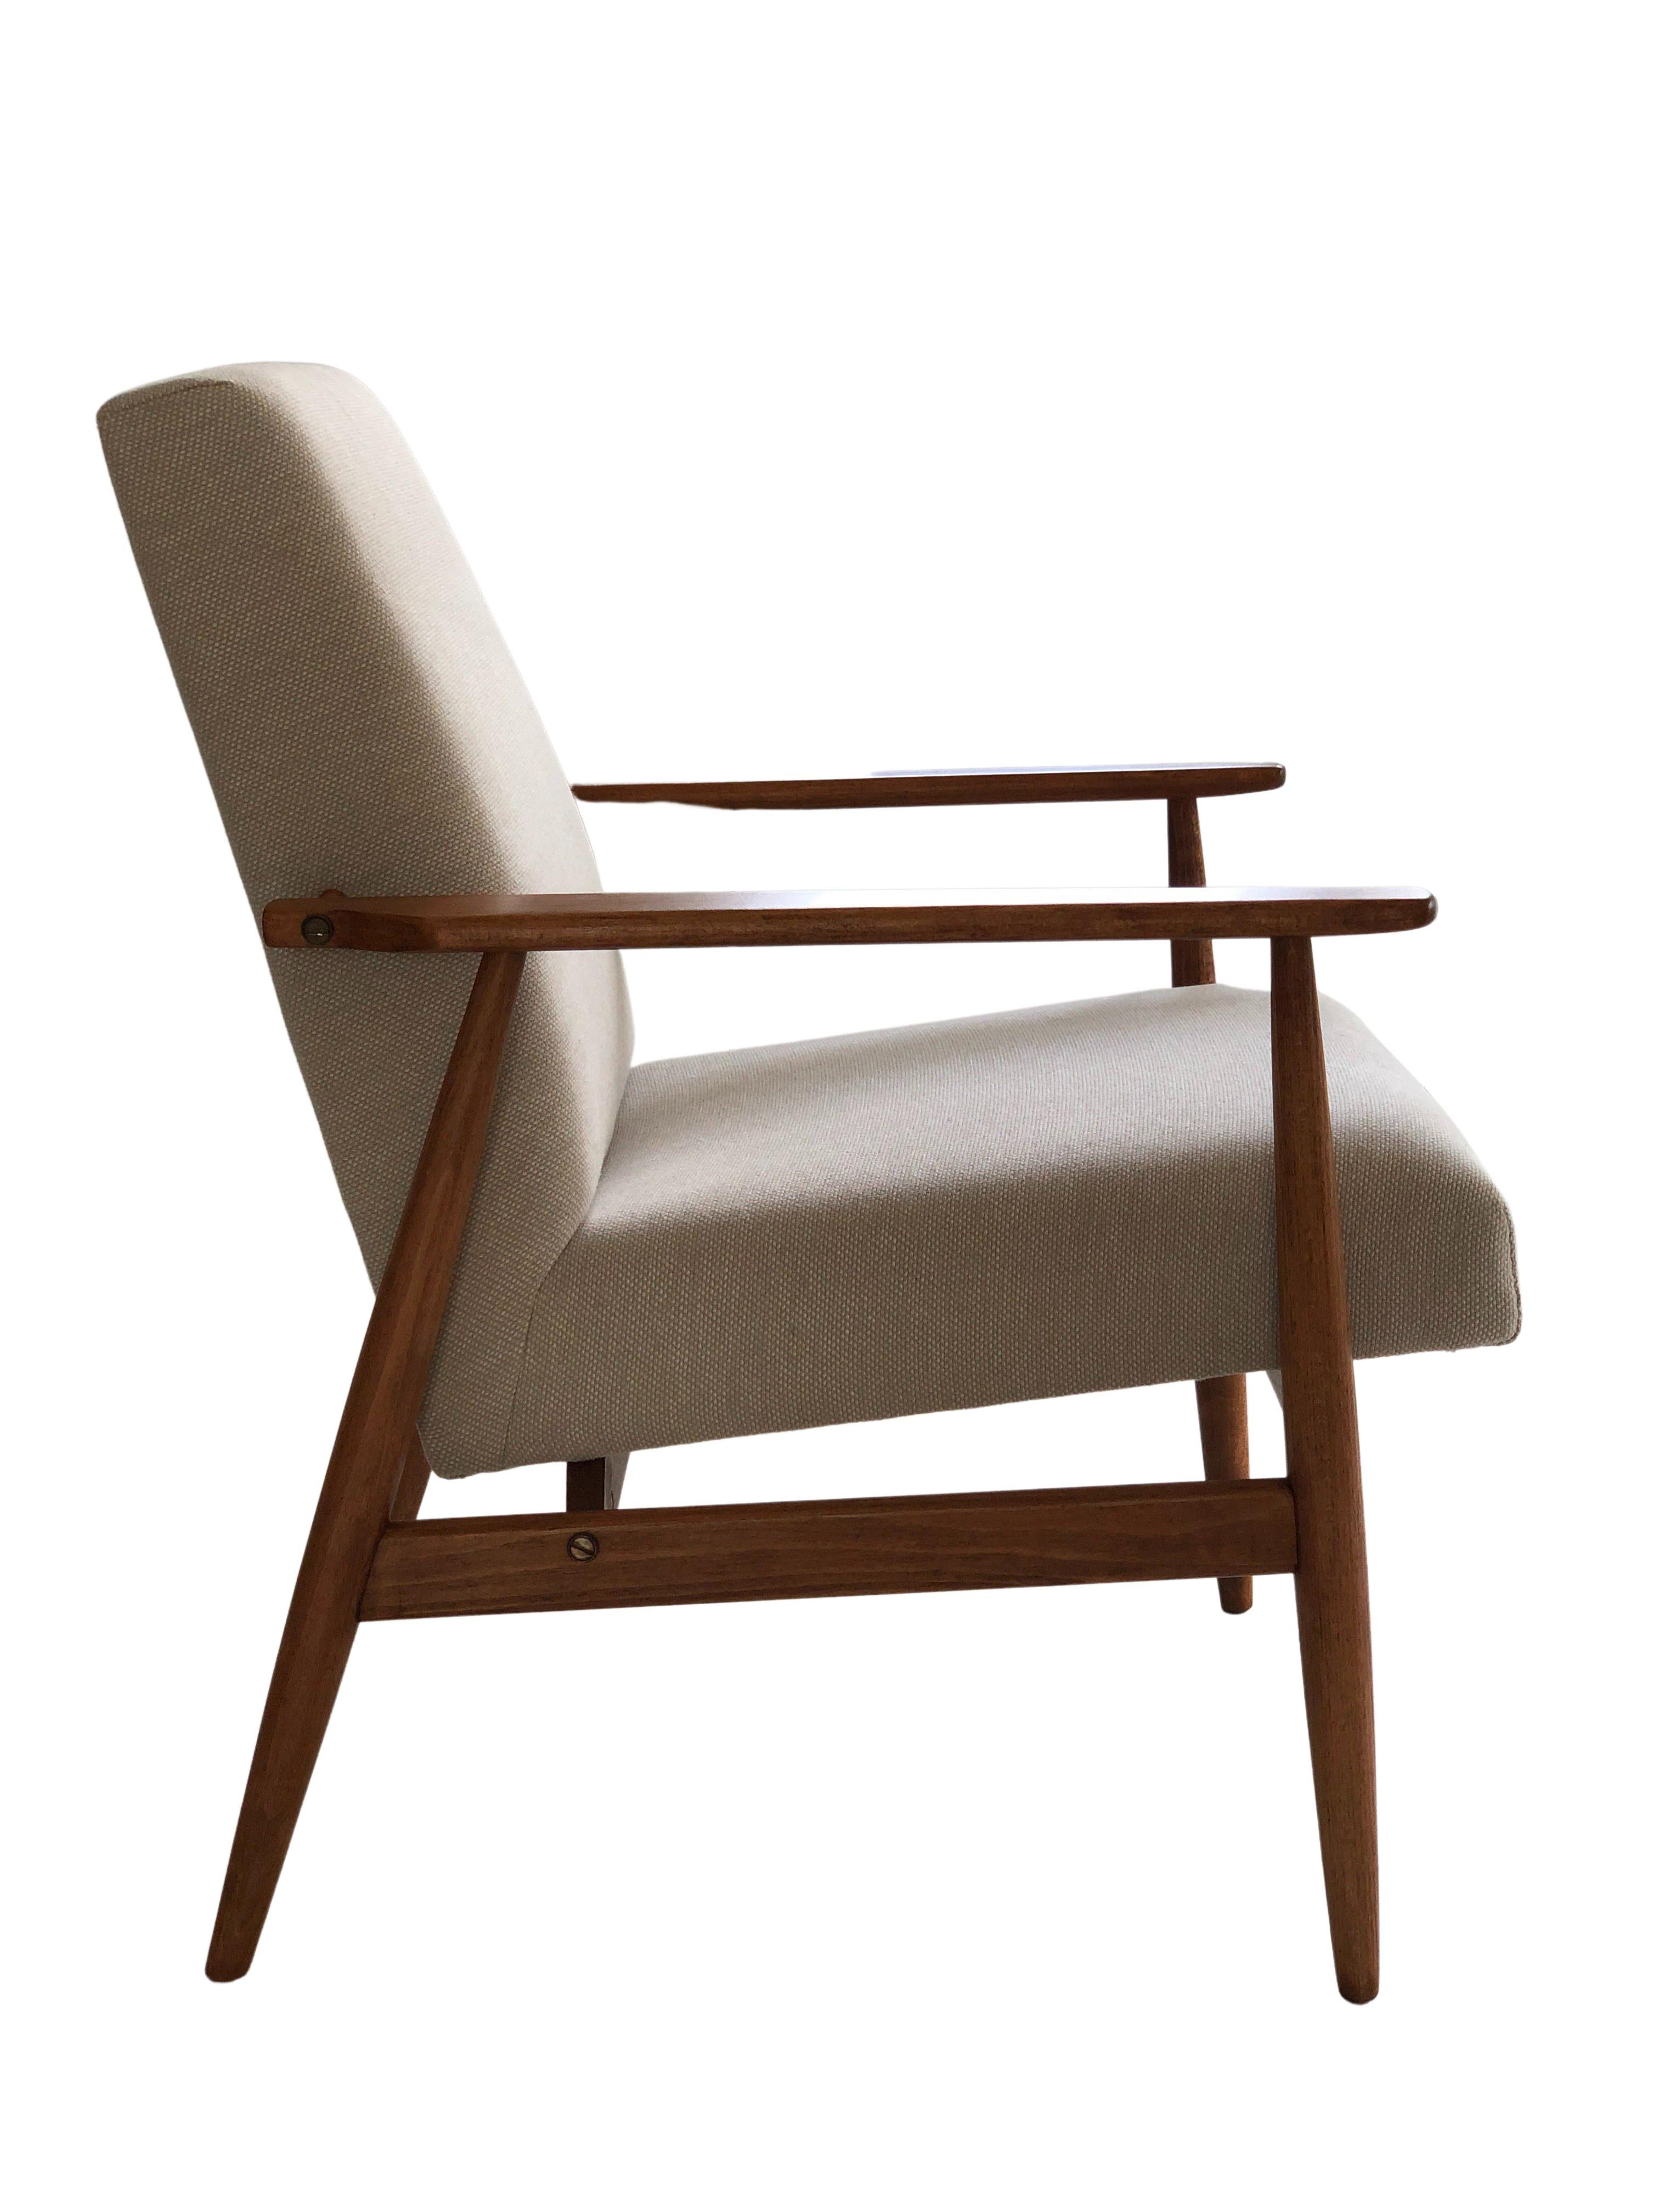 Der Sessel wurde von Henryk Lis entworfen. Die Struktur besteht aus Buchenholz in einer warmen Walnussfarbe, die mit einem seidenmatten Lack überzogen ist. Die Polsterung ist aus schwerem Baumwoll- und Leinenstoff in Beige. 

Der Sessel wurde